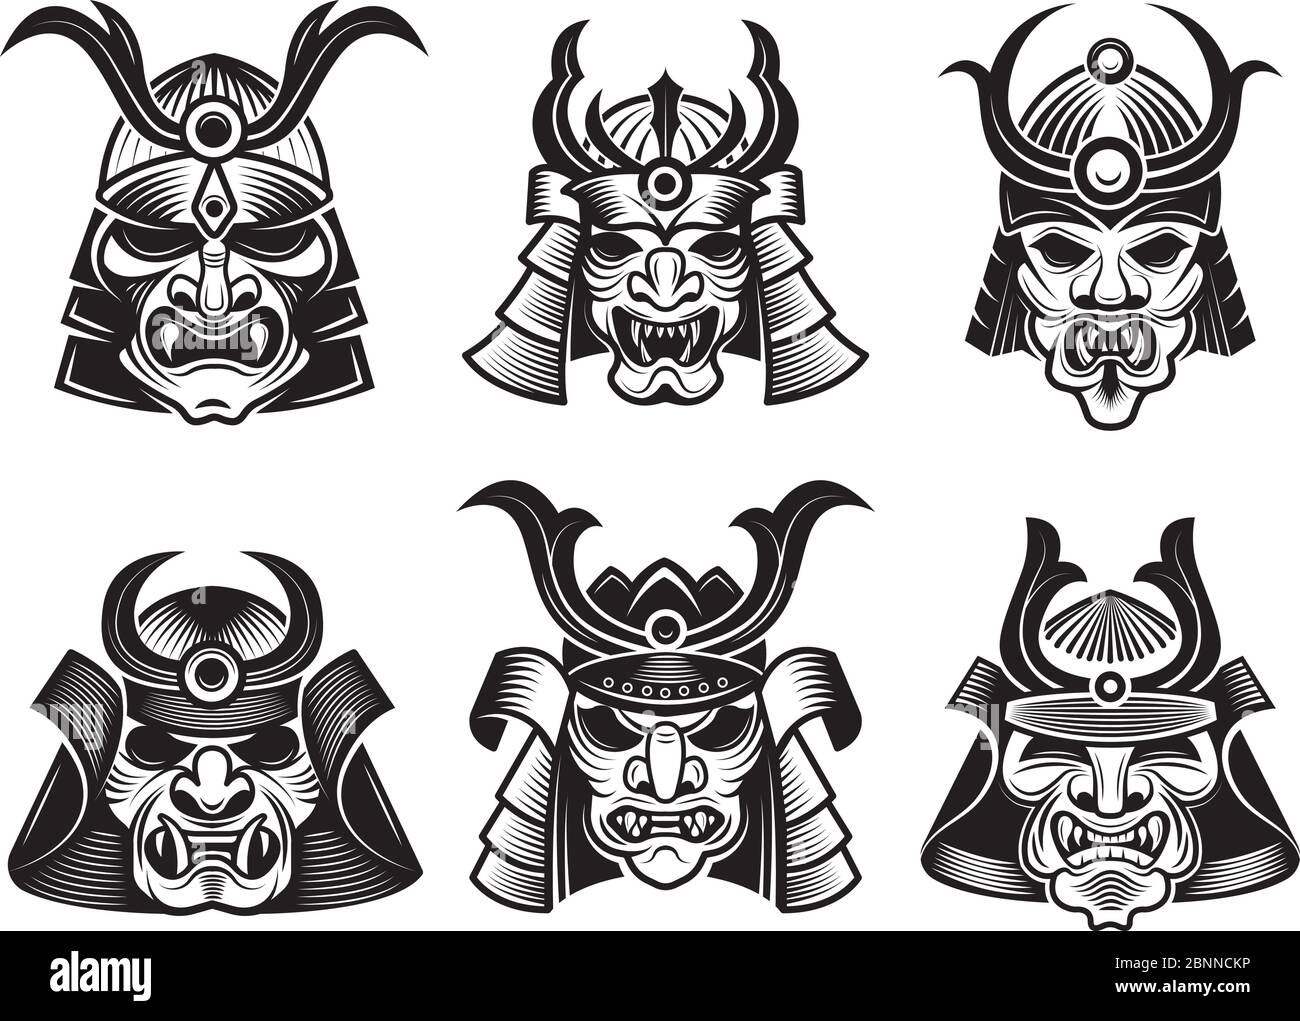 Maschera marziale asiatica. Illustrazioni vettoriali samurai giapponesi con armatura da viso per tatoo o logo Illustrazione Vettoriale